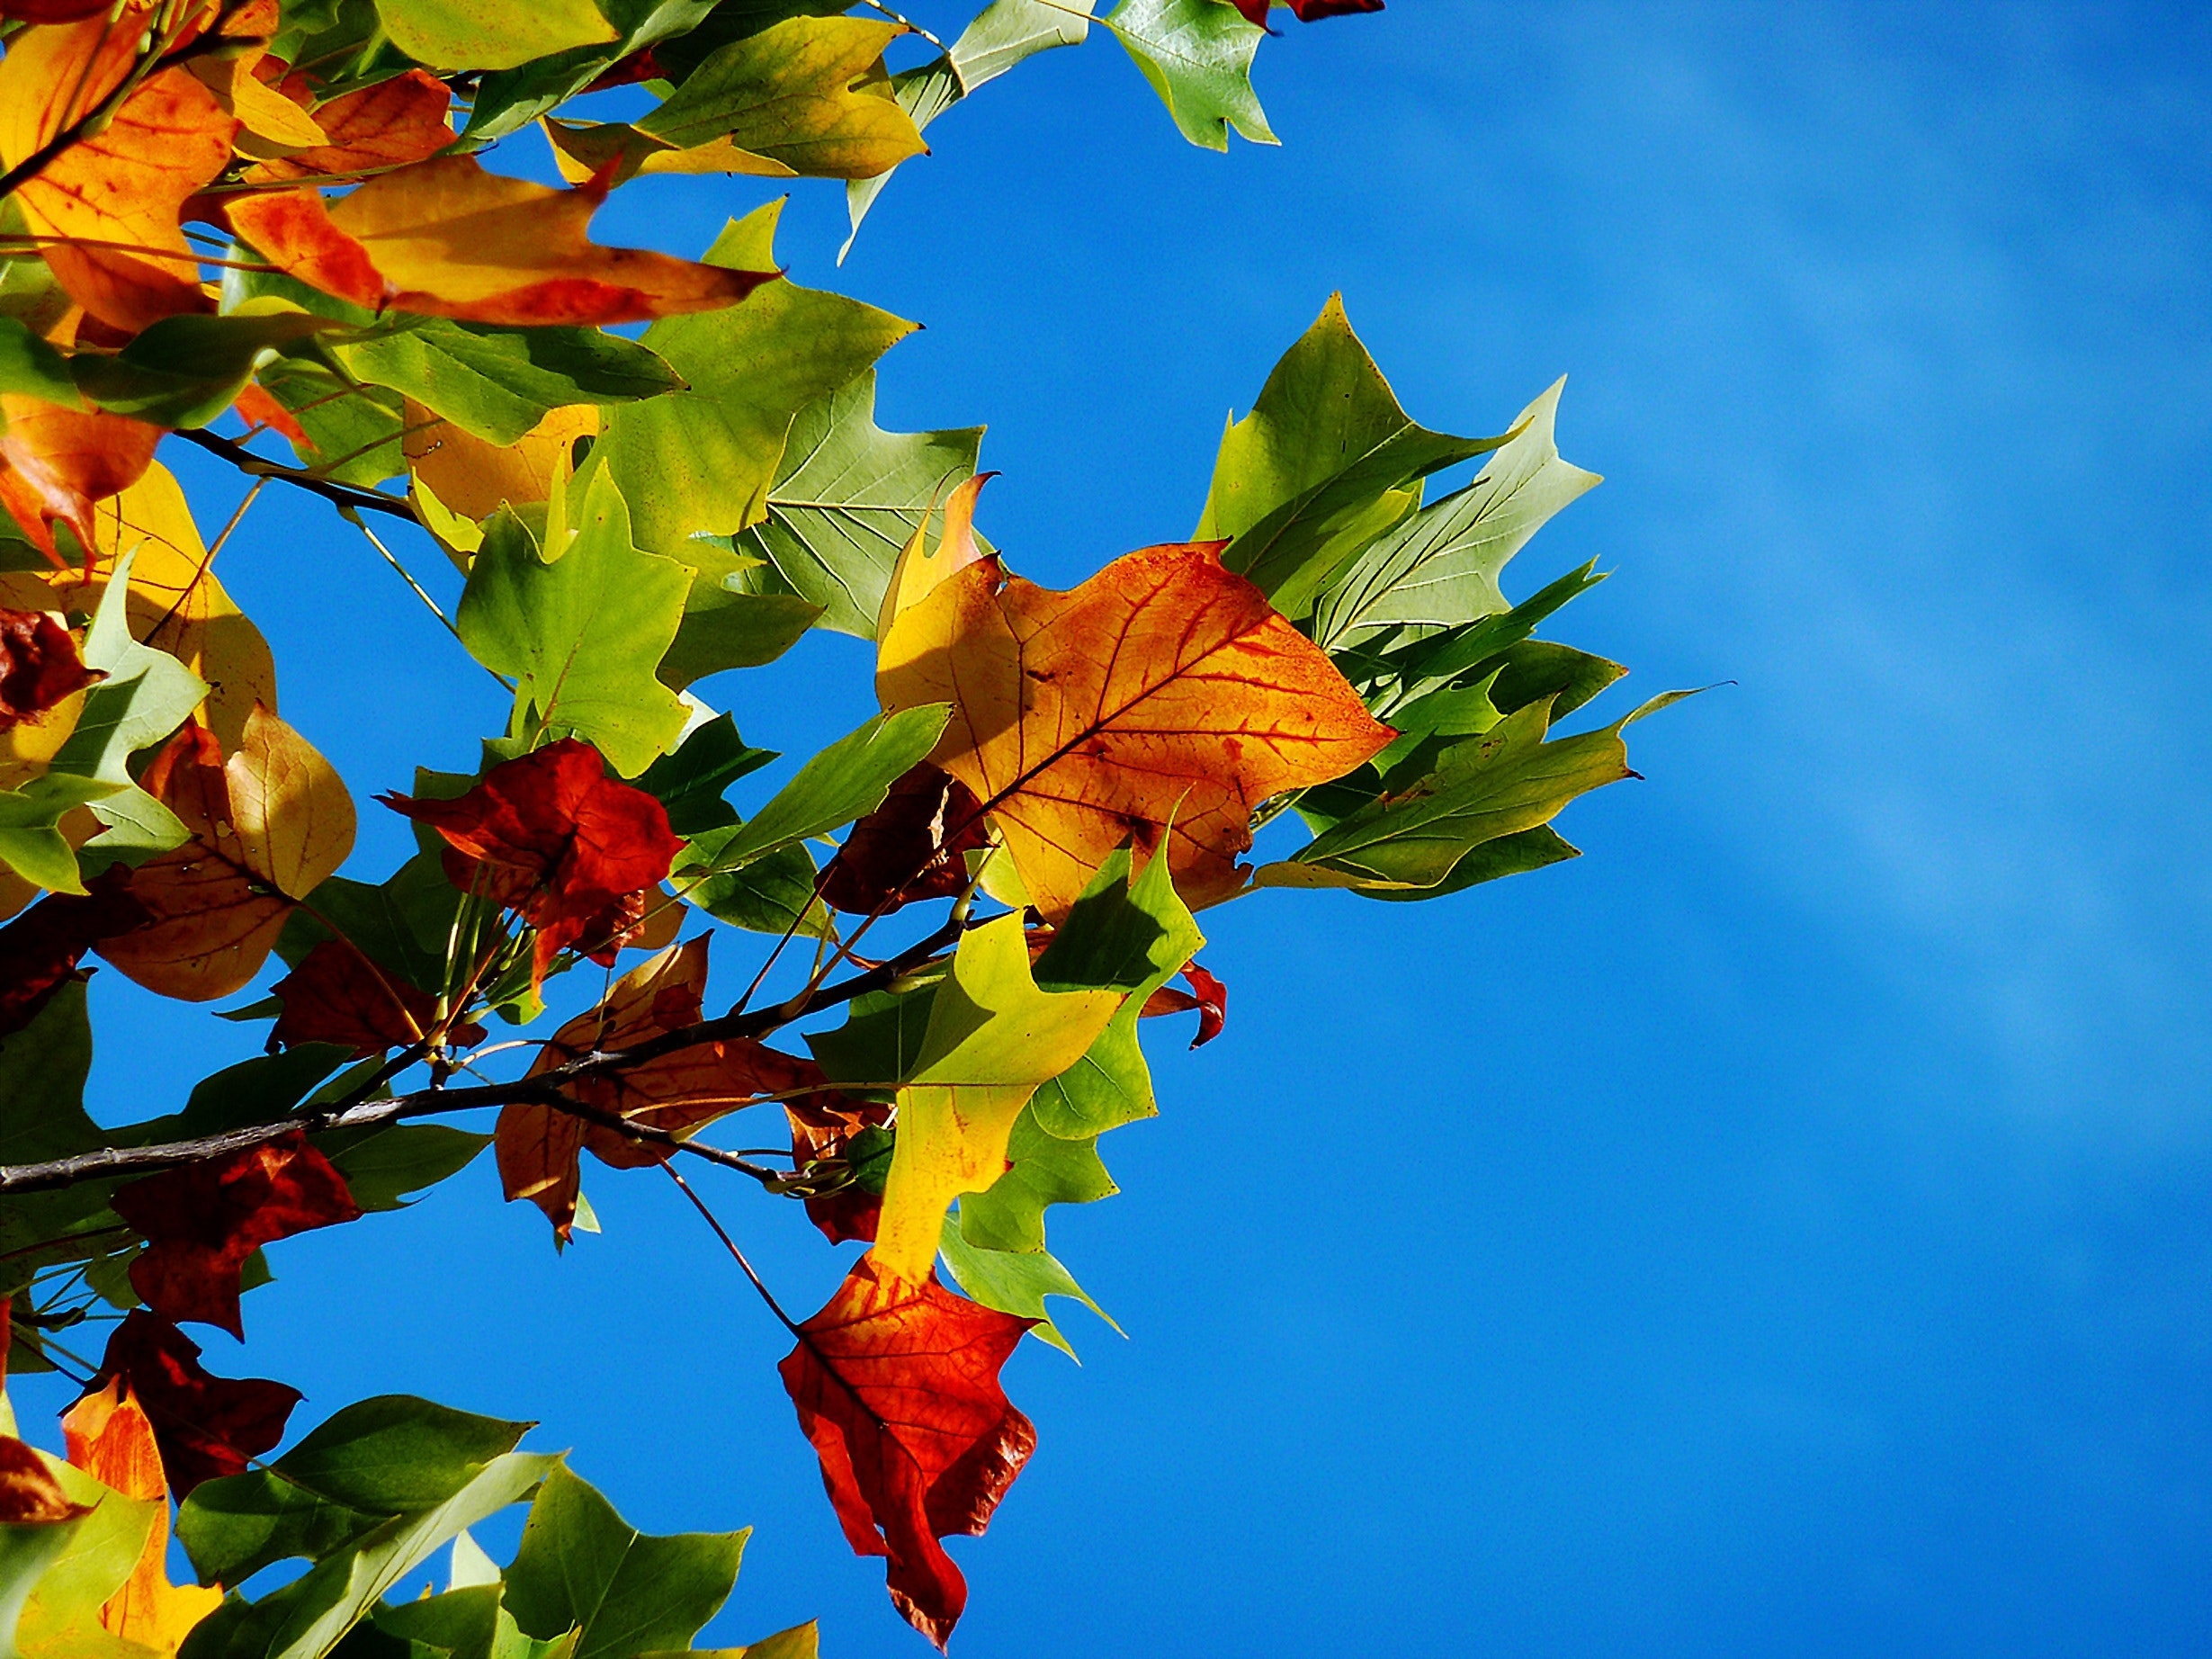 Herbstliche Lernimpulse für dein Wohlbefinden